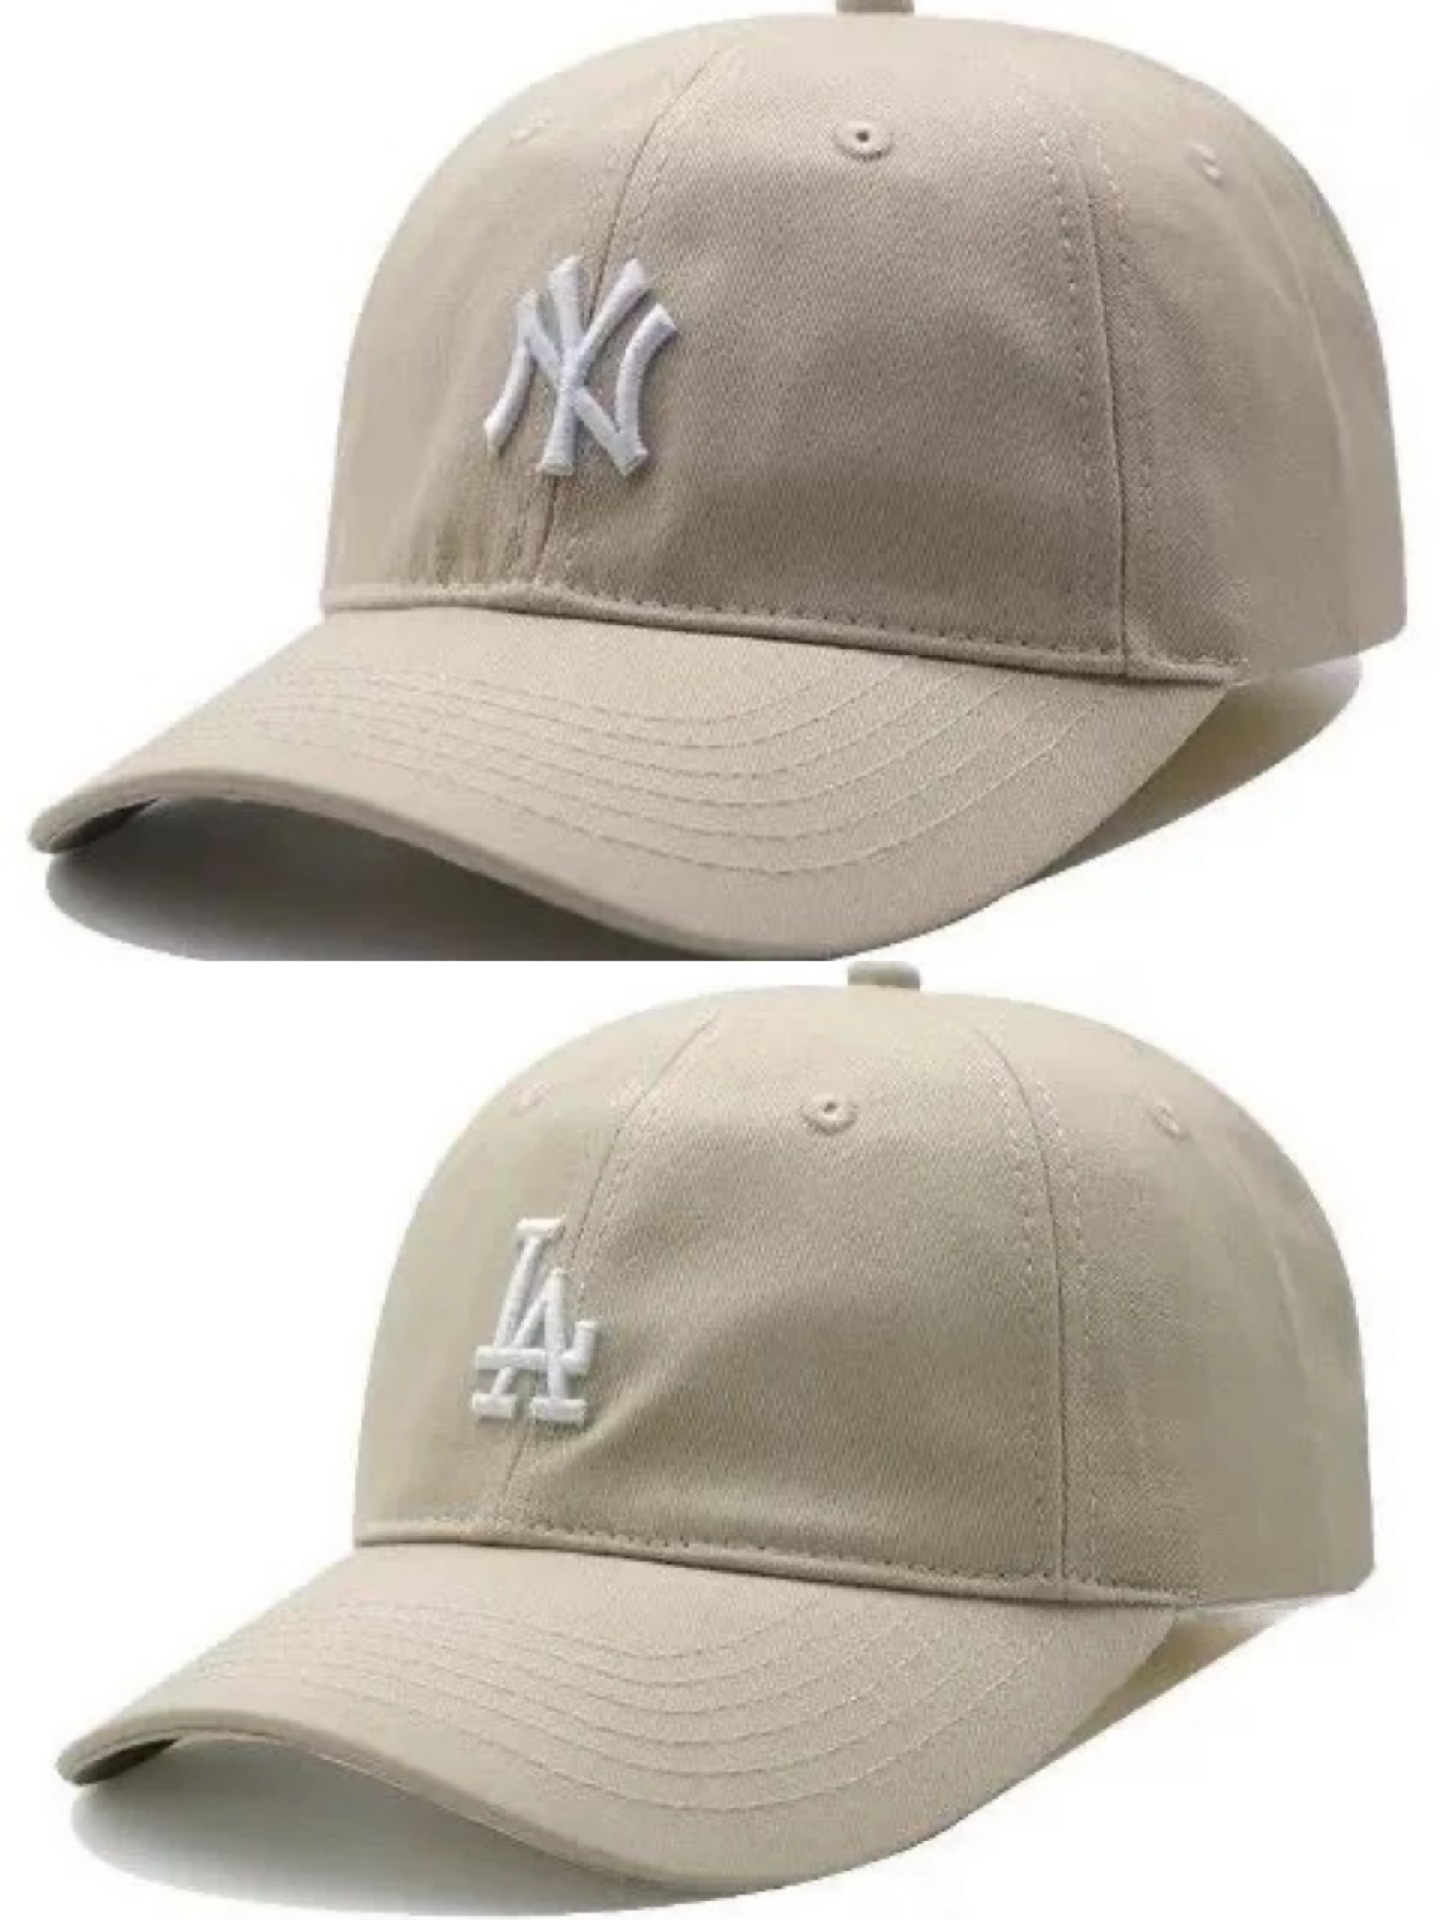 白色洋基棒球运动帽图片素材-编号10365474-图行天下